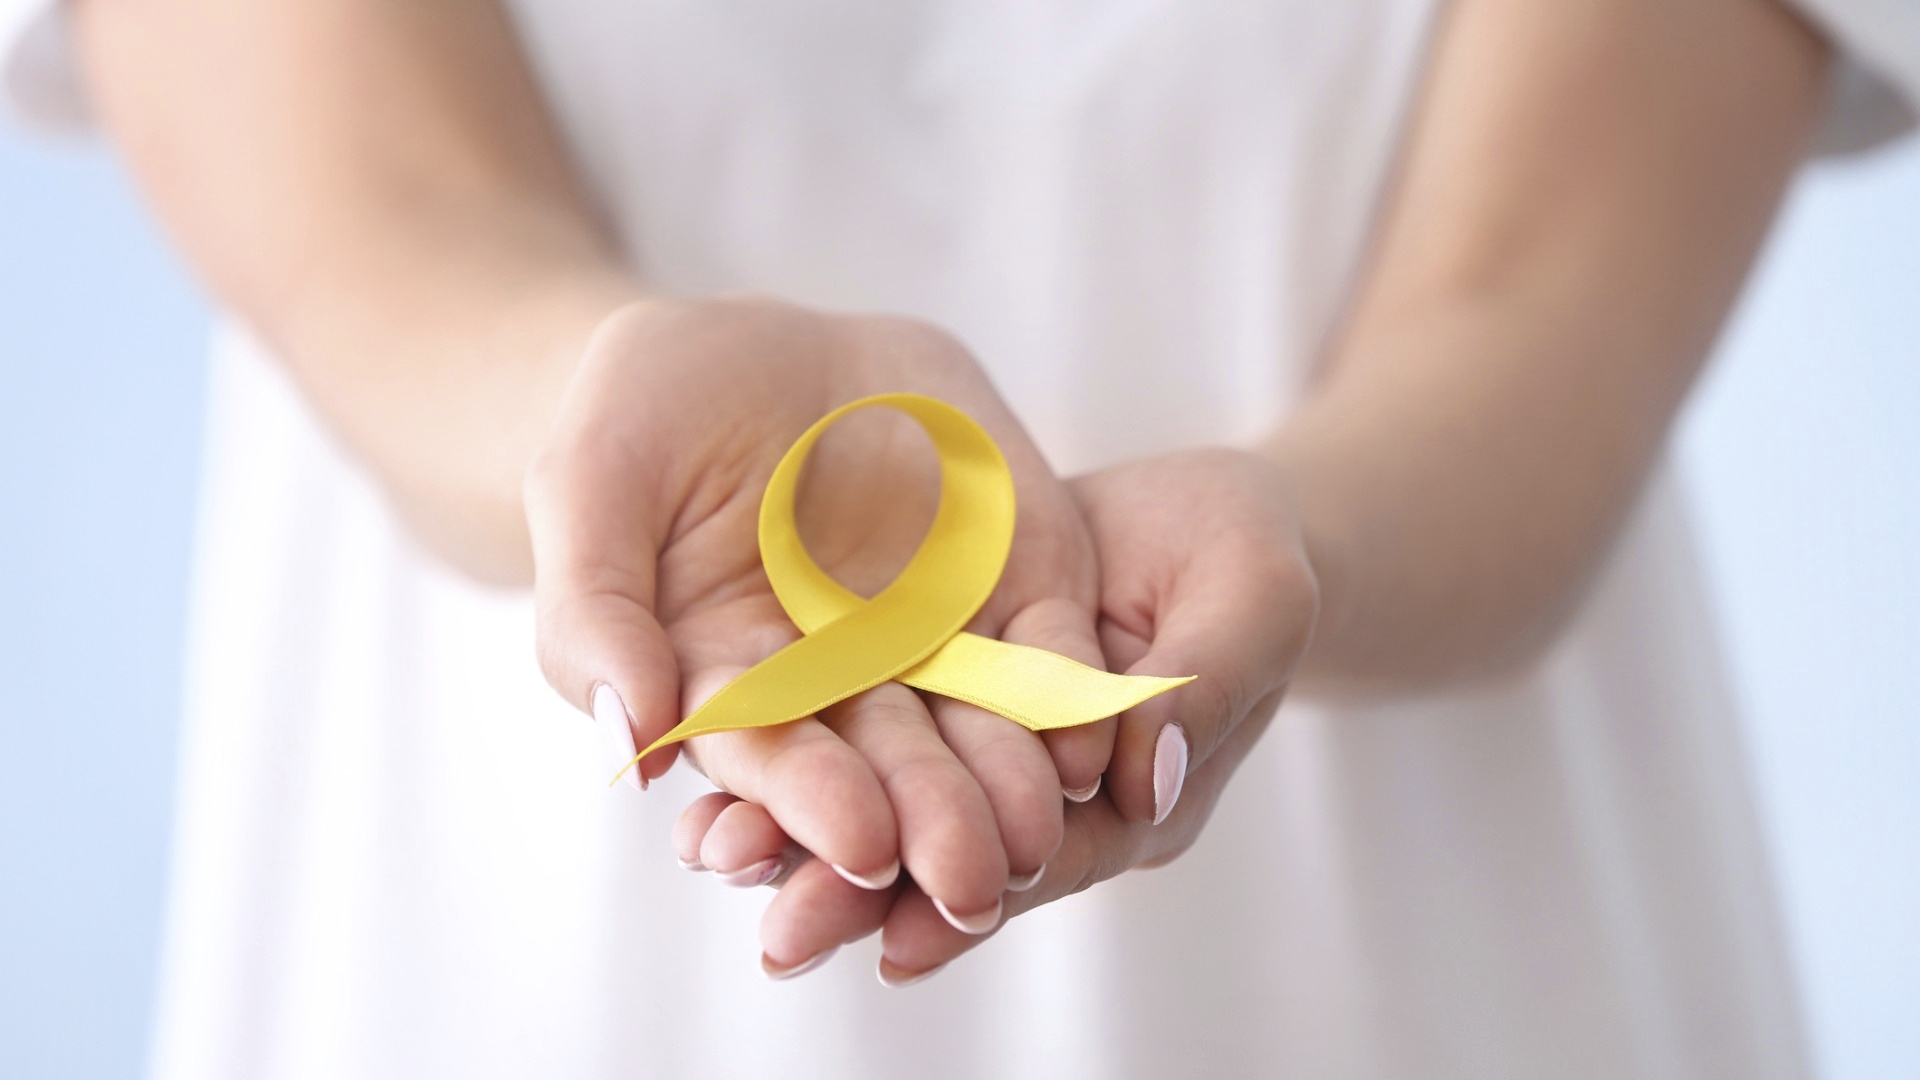 Keltaisella nauhalla voi osoittaa tietoisuutta endometrioosista kärsiviä kohtaan.